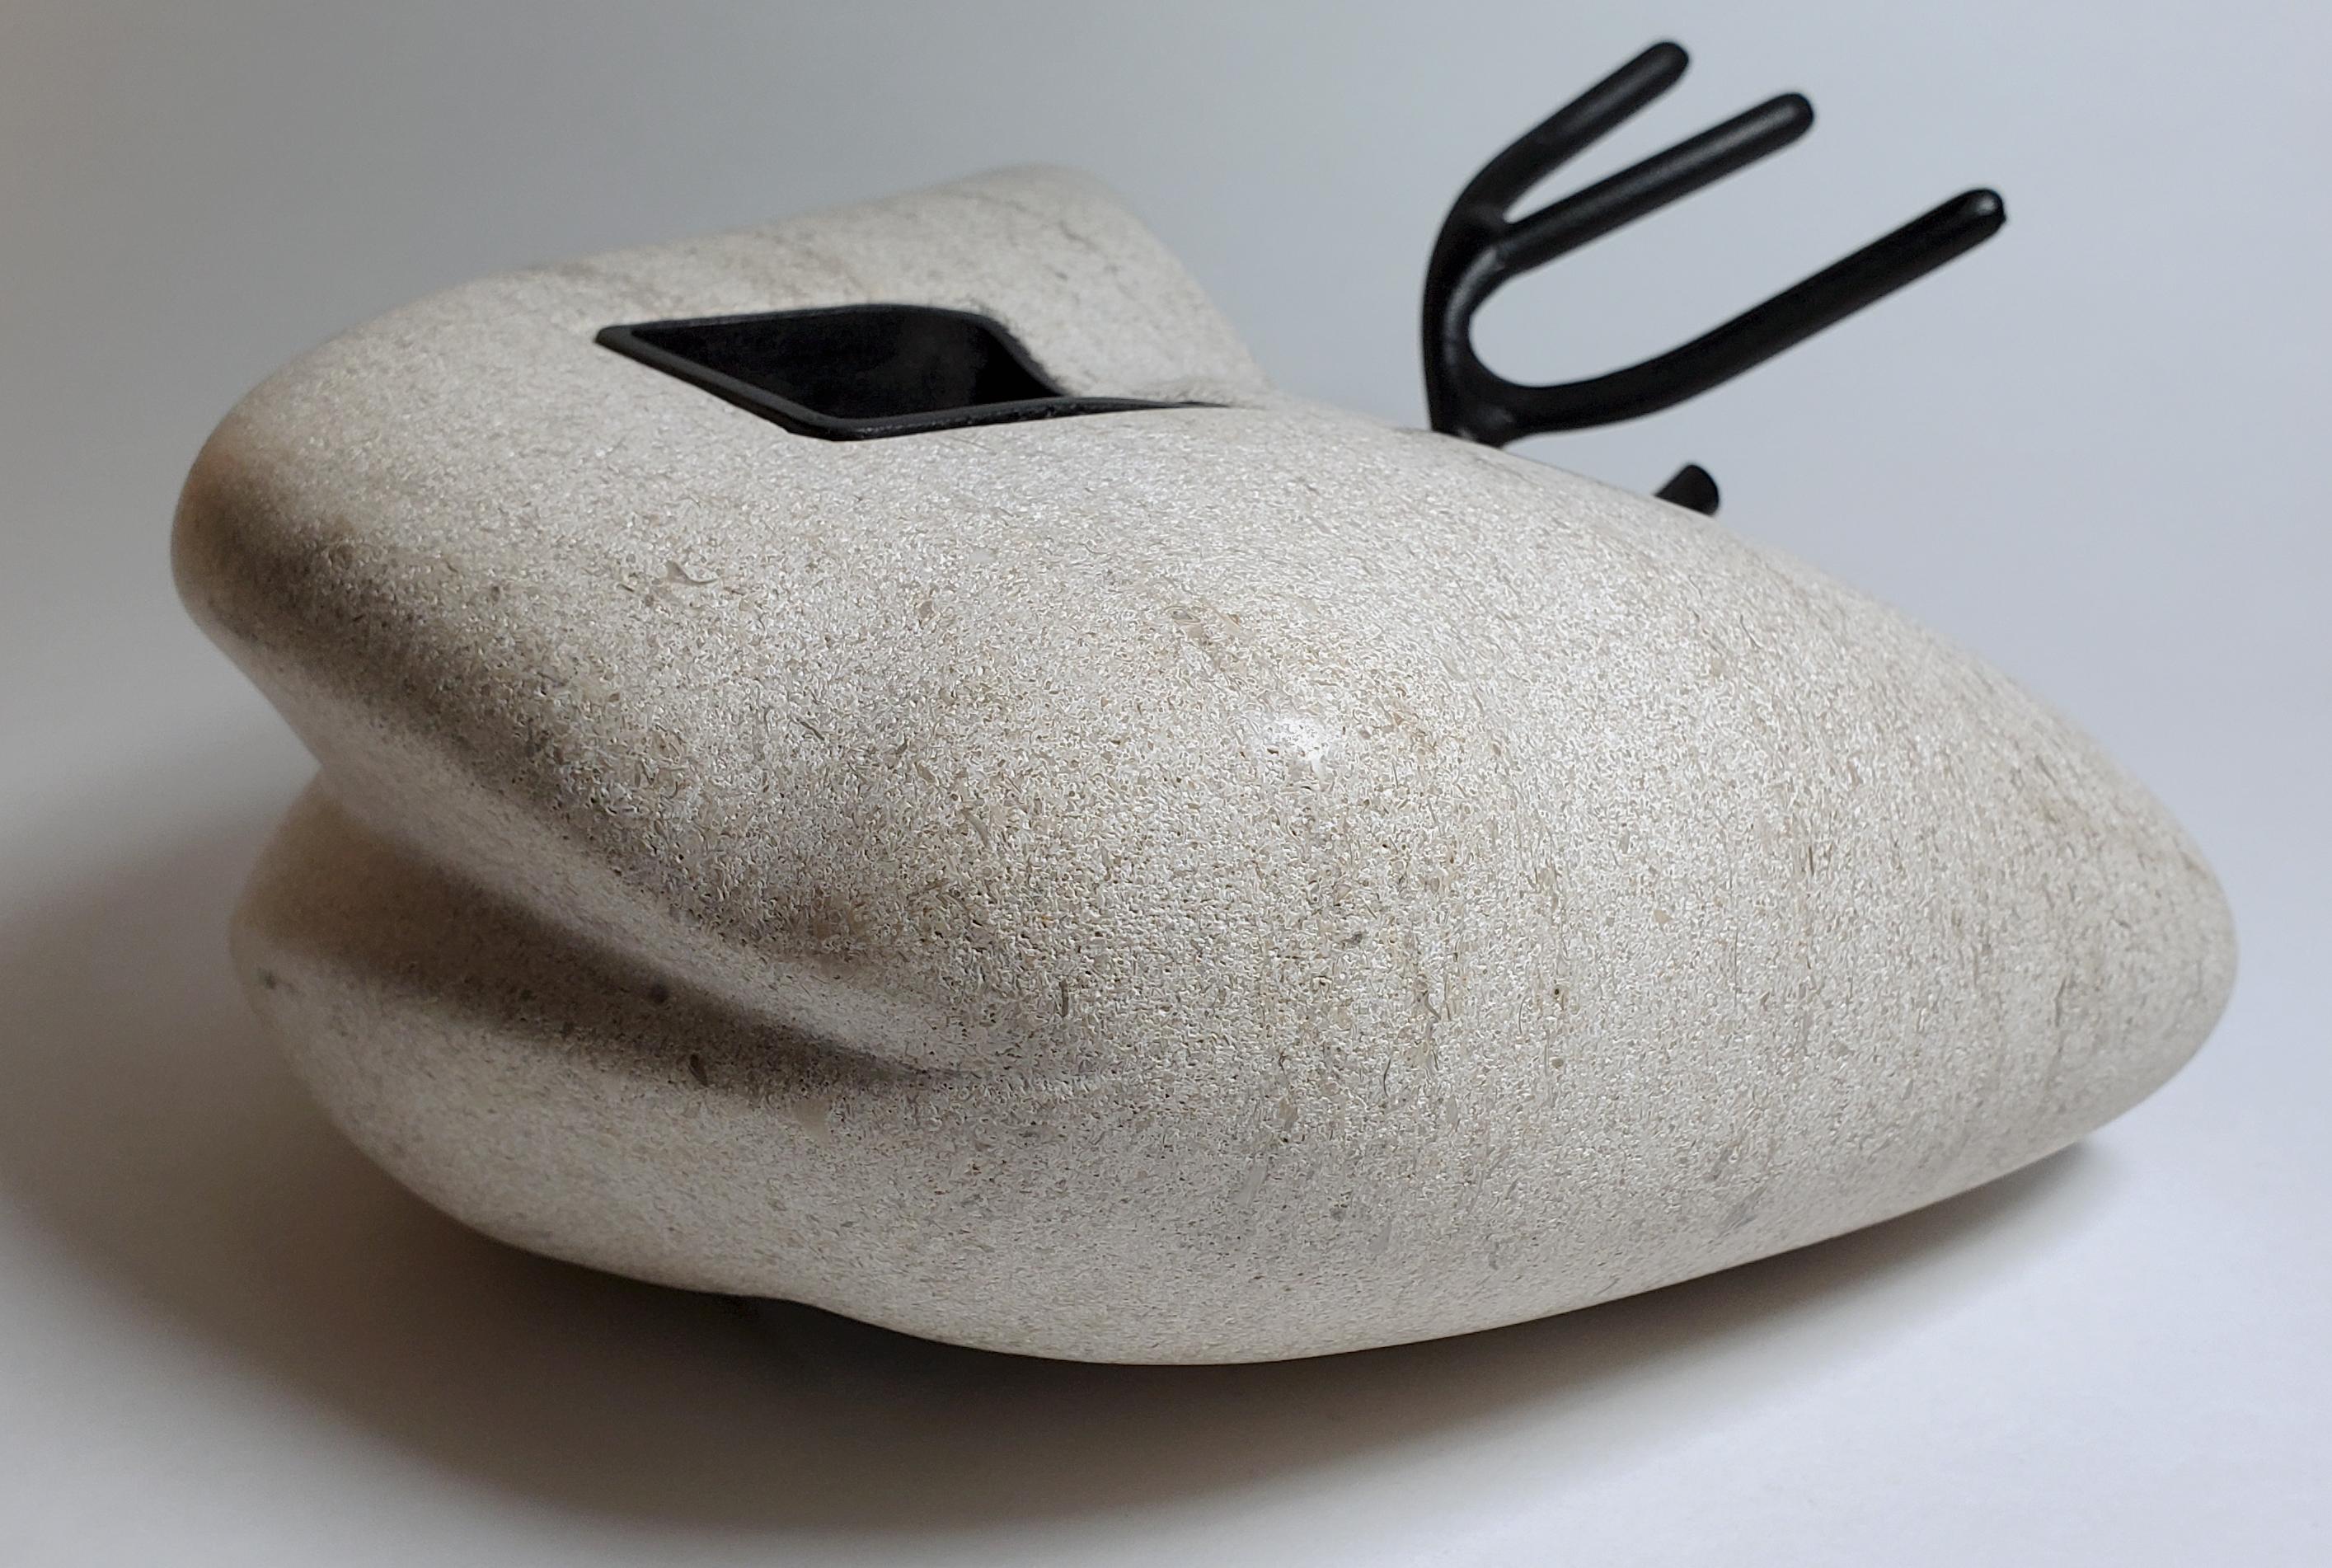  Insider-Serie (Title; Disengaged #2) – Sculpture von Mark Beltchenko Studio